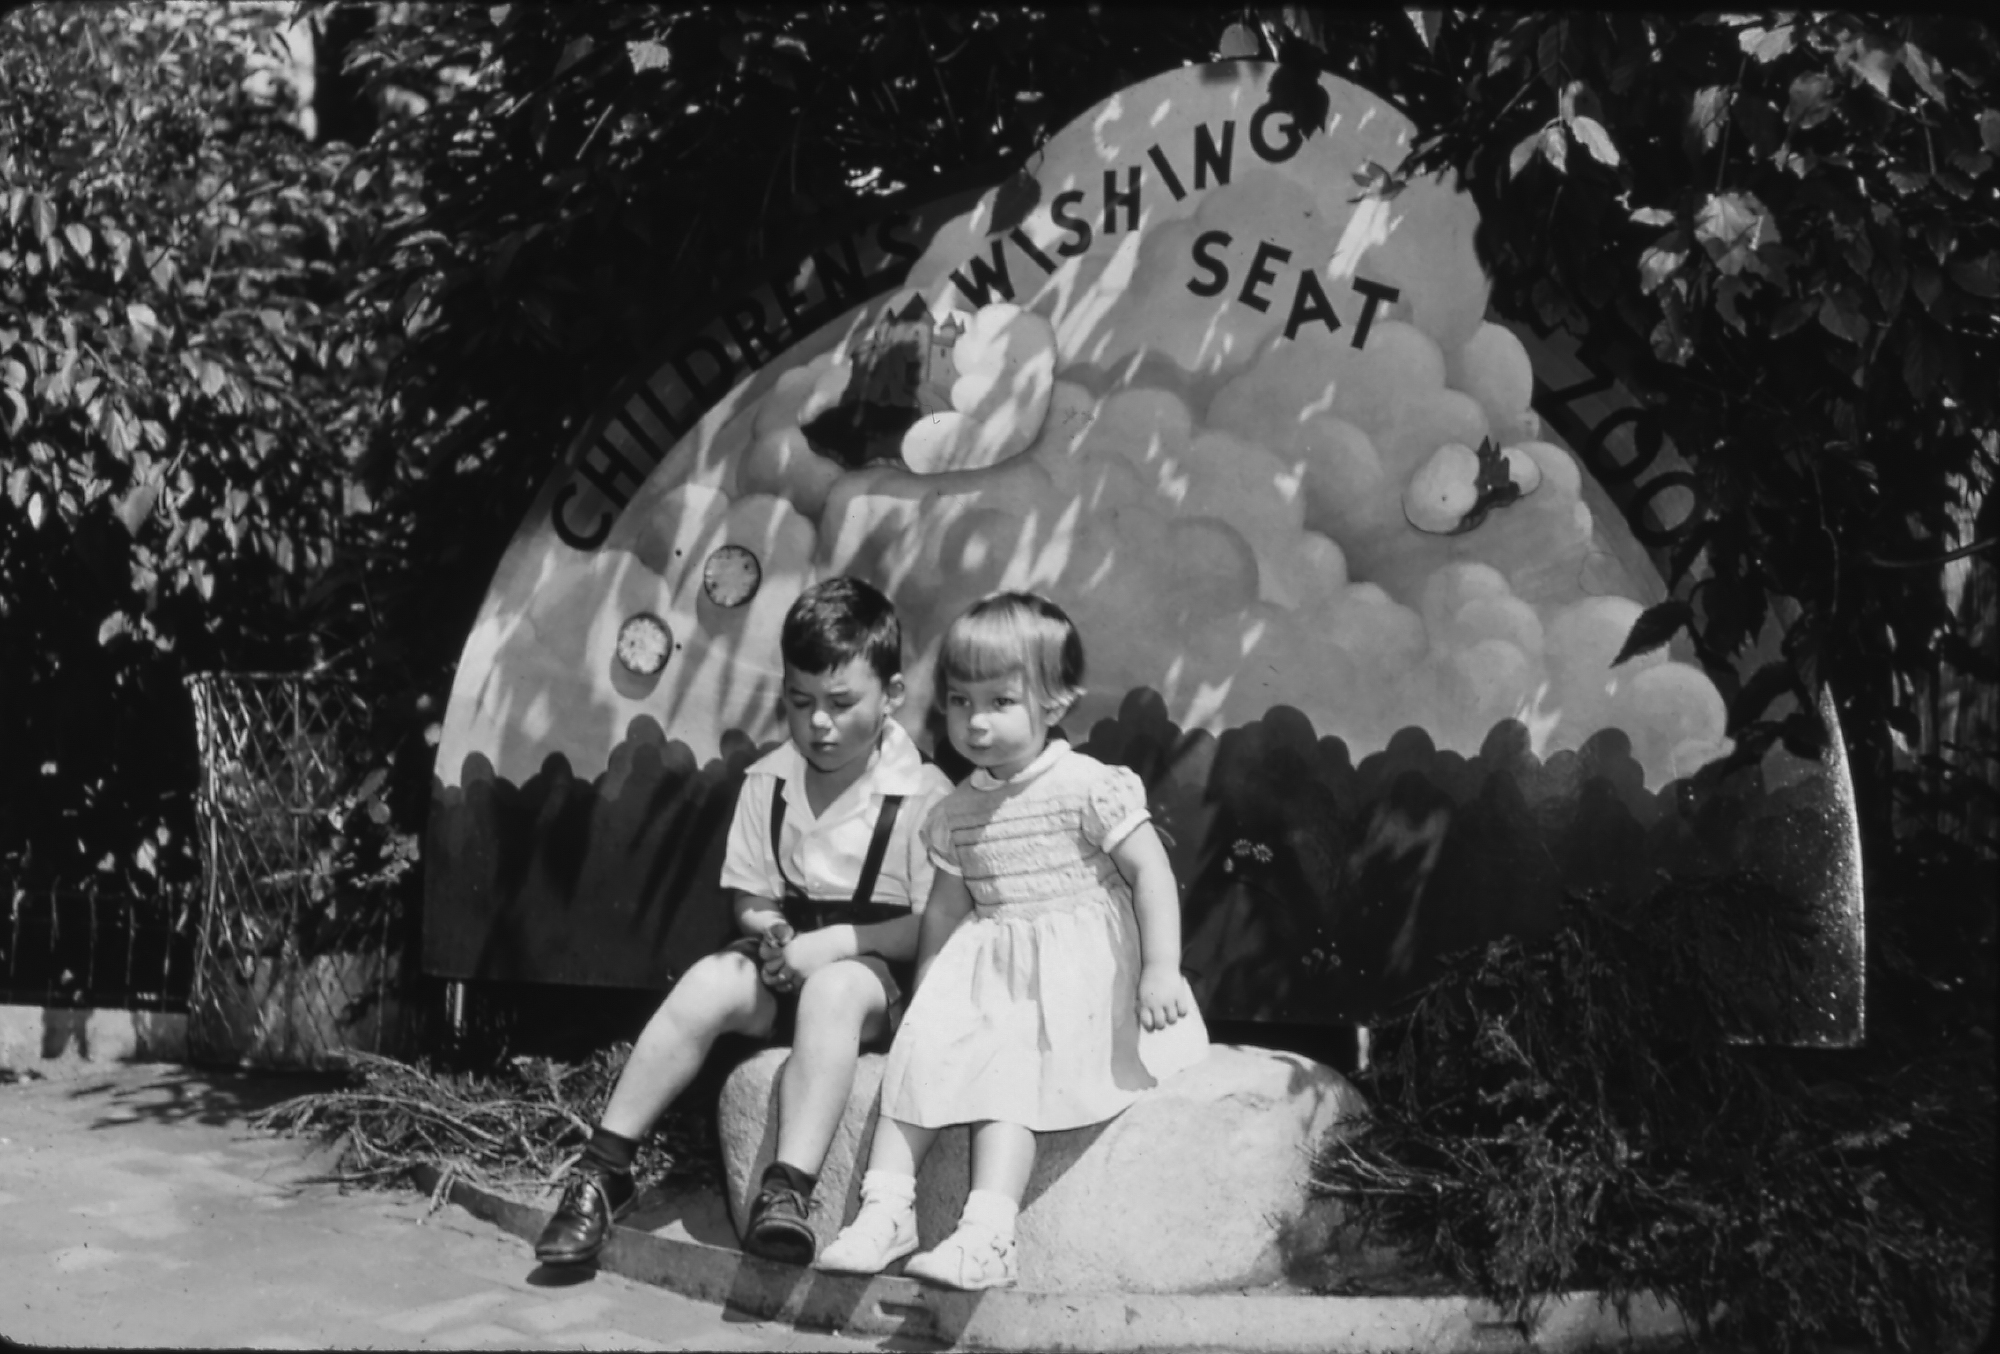 Children’s Wishing Seat at the Bronx Zoo